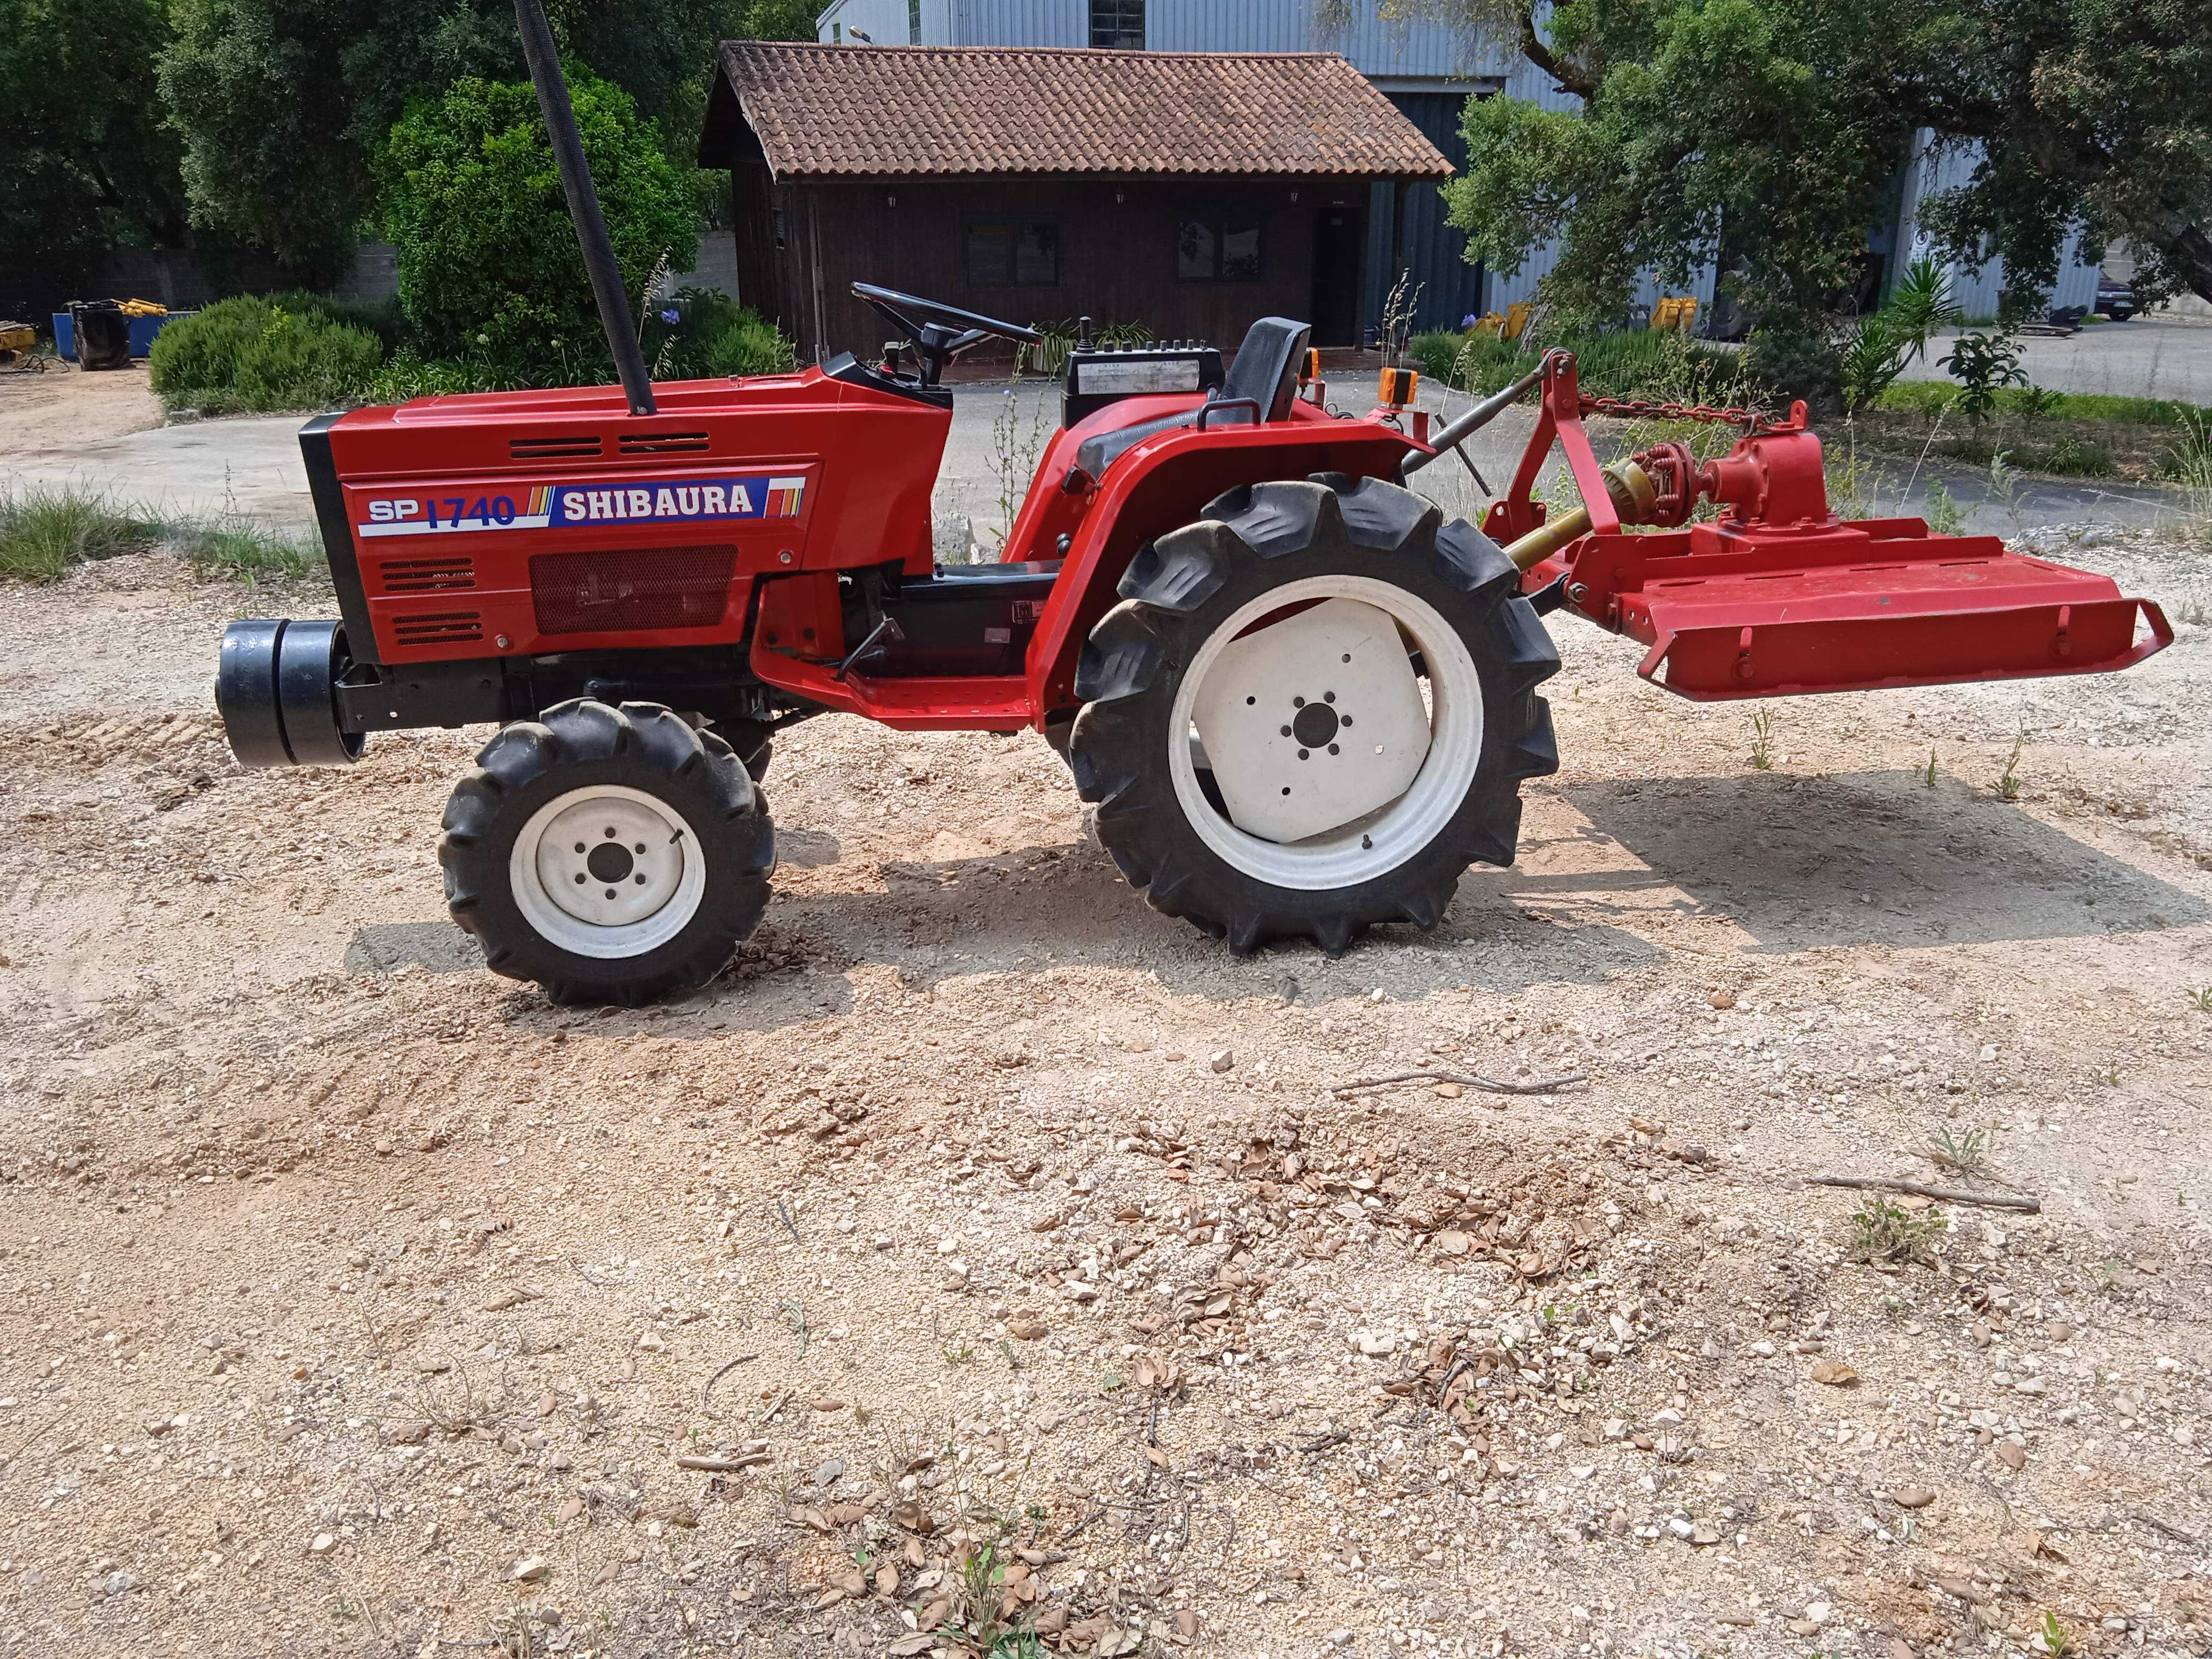 Tractor Agricola 4x4 Shibaura SP1740 com Corta Mato